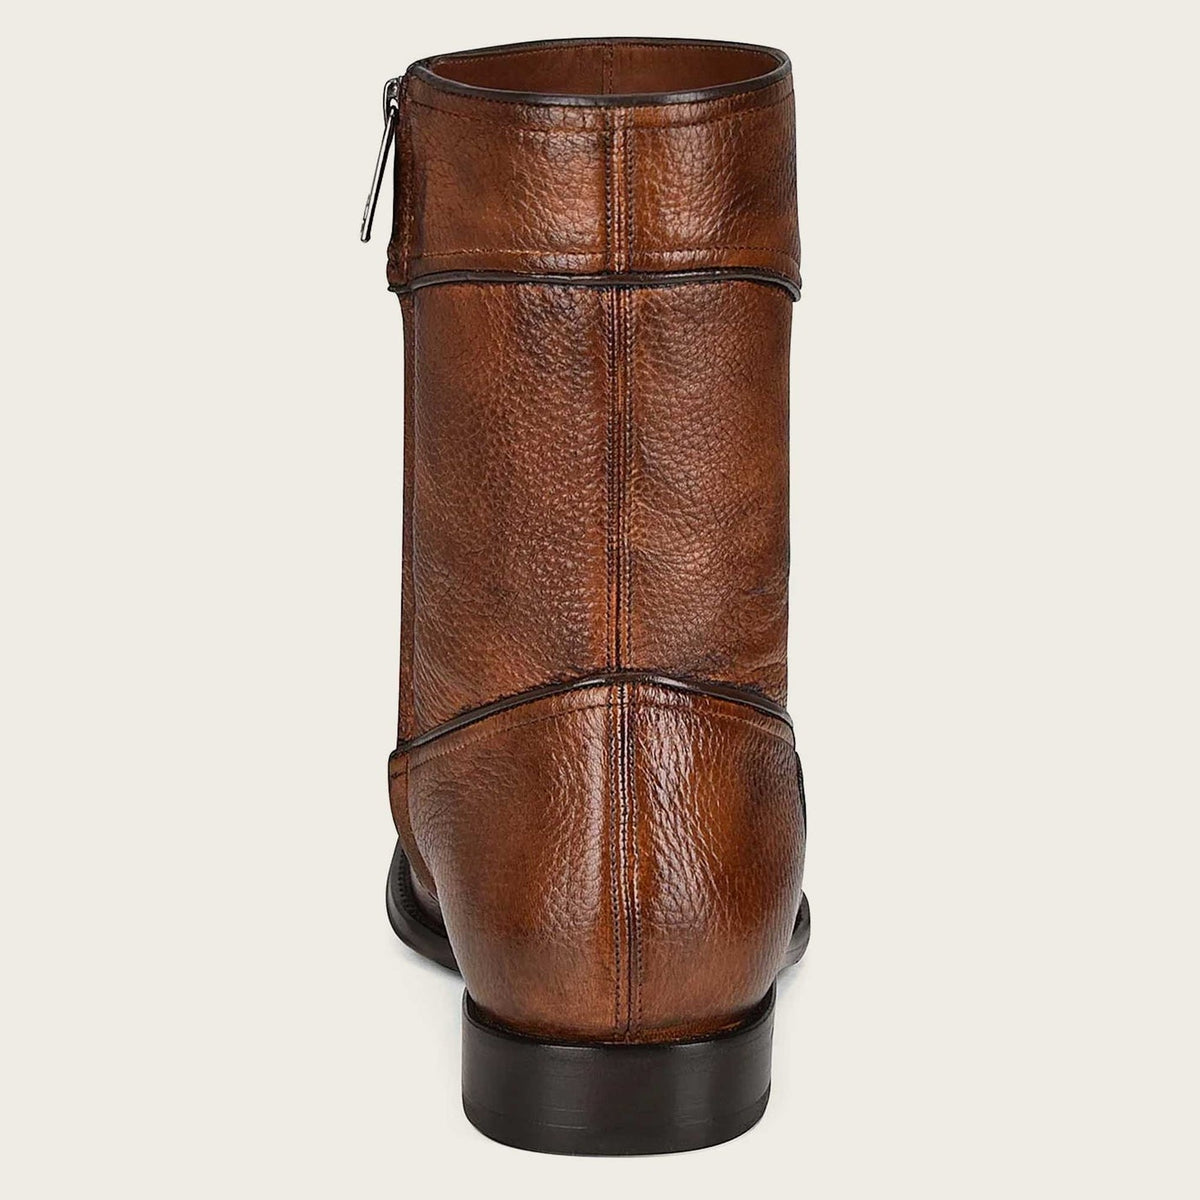 Cuadra Men's Honey Deer Leather Boots - Dudes Boutique